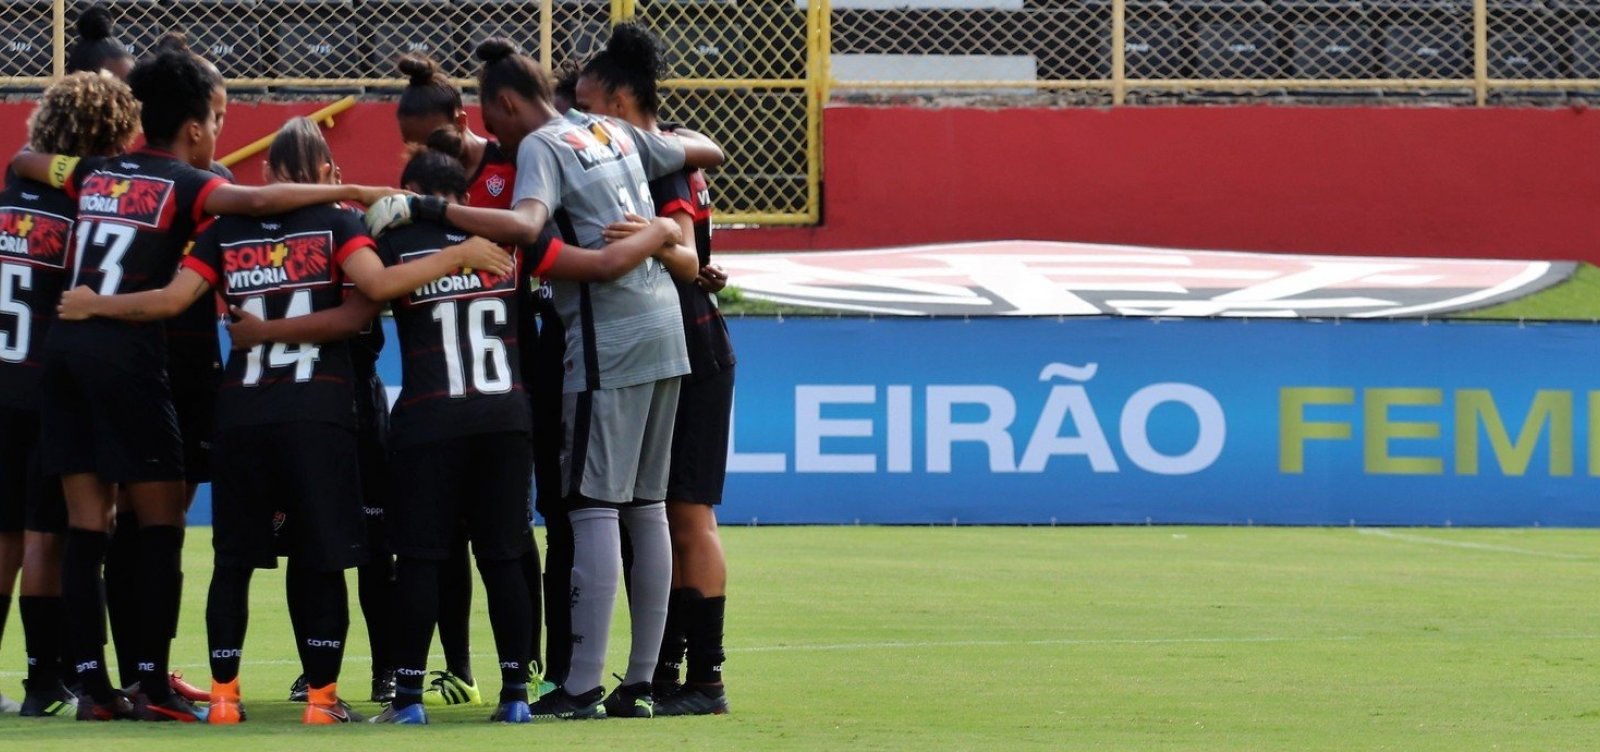 Futebol feminino: time do Vitória passa a mandar jogos em Praia do Forte